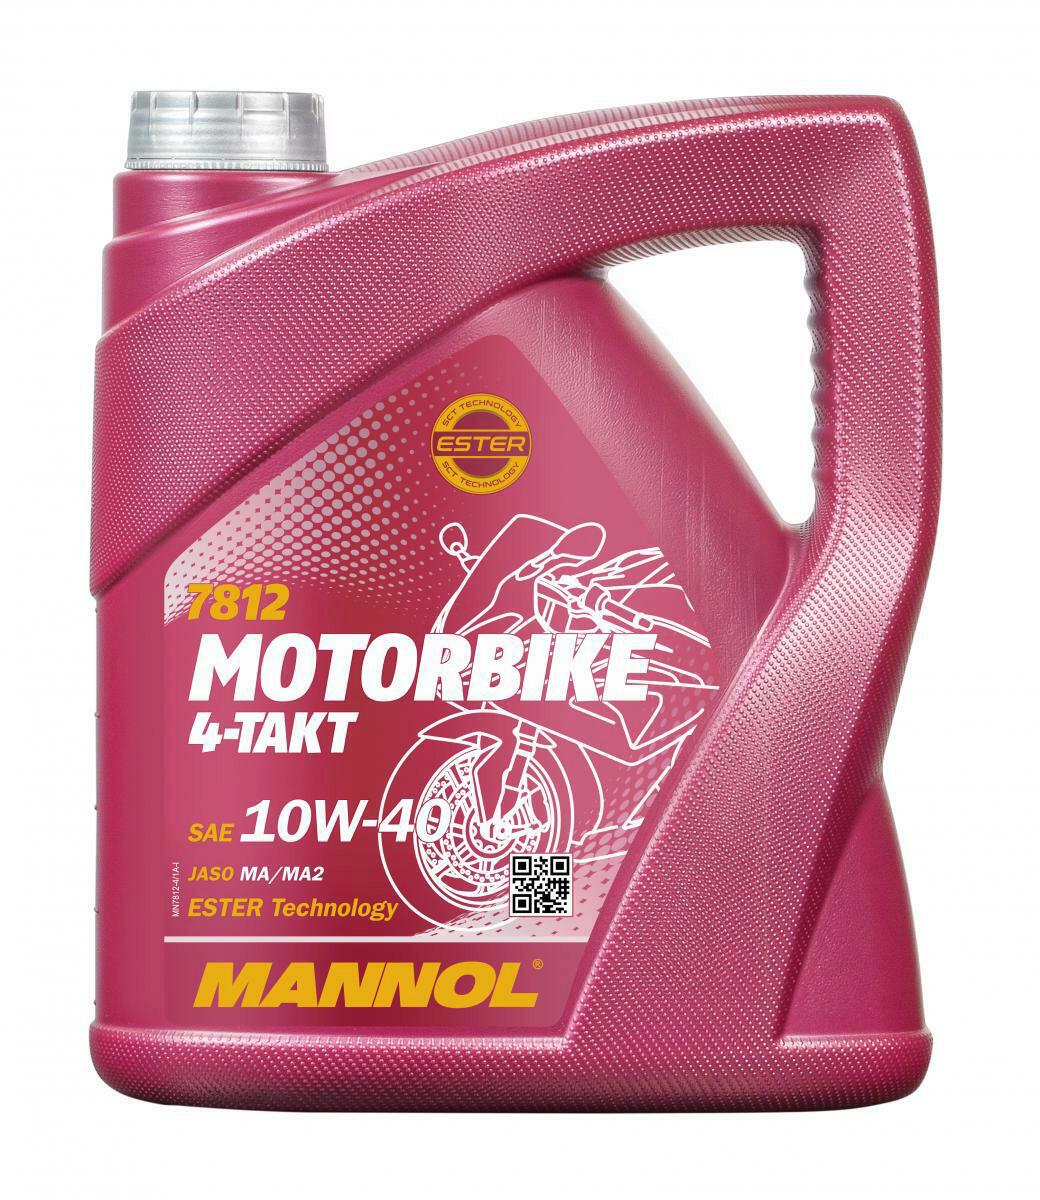 4L Mannol 4-Takt Motoröl Motorbike Motorrad Öl 10W-40